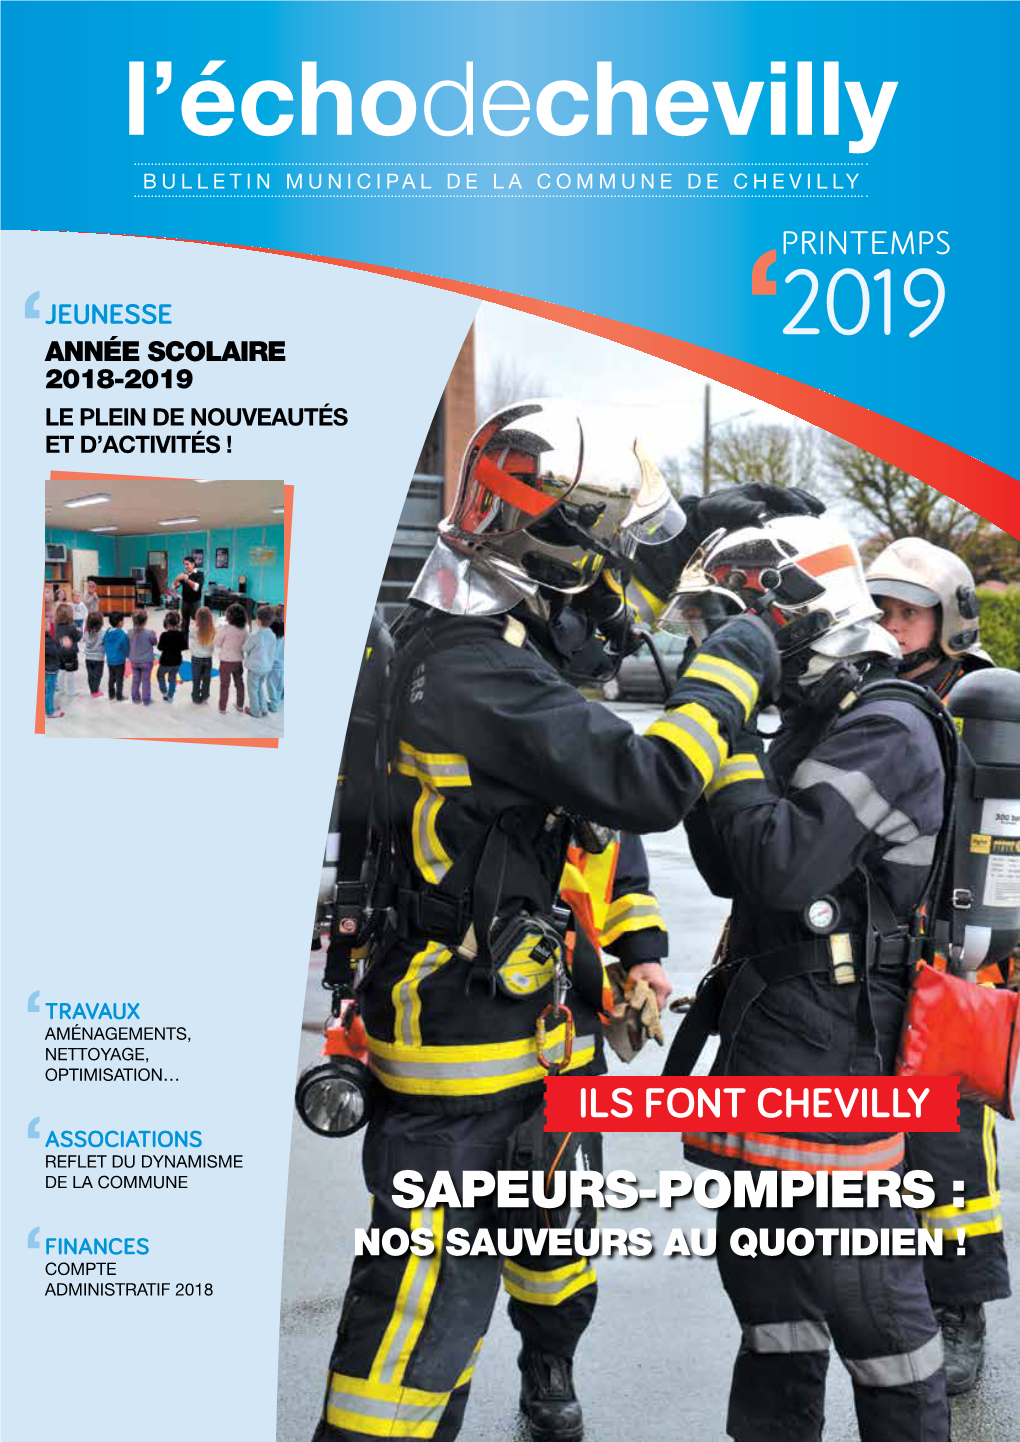 Sapeurs-Pompiers : Finances Nos Sauveurs Au Quotidien ! Compte Administratif 2018 Édito